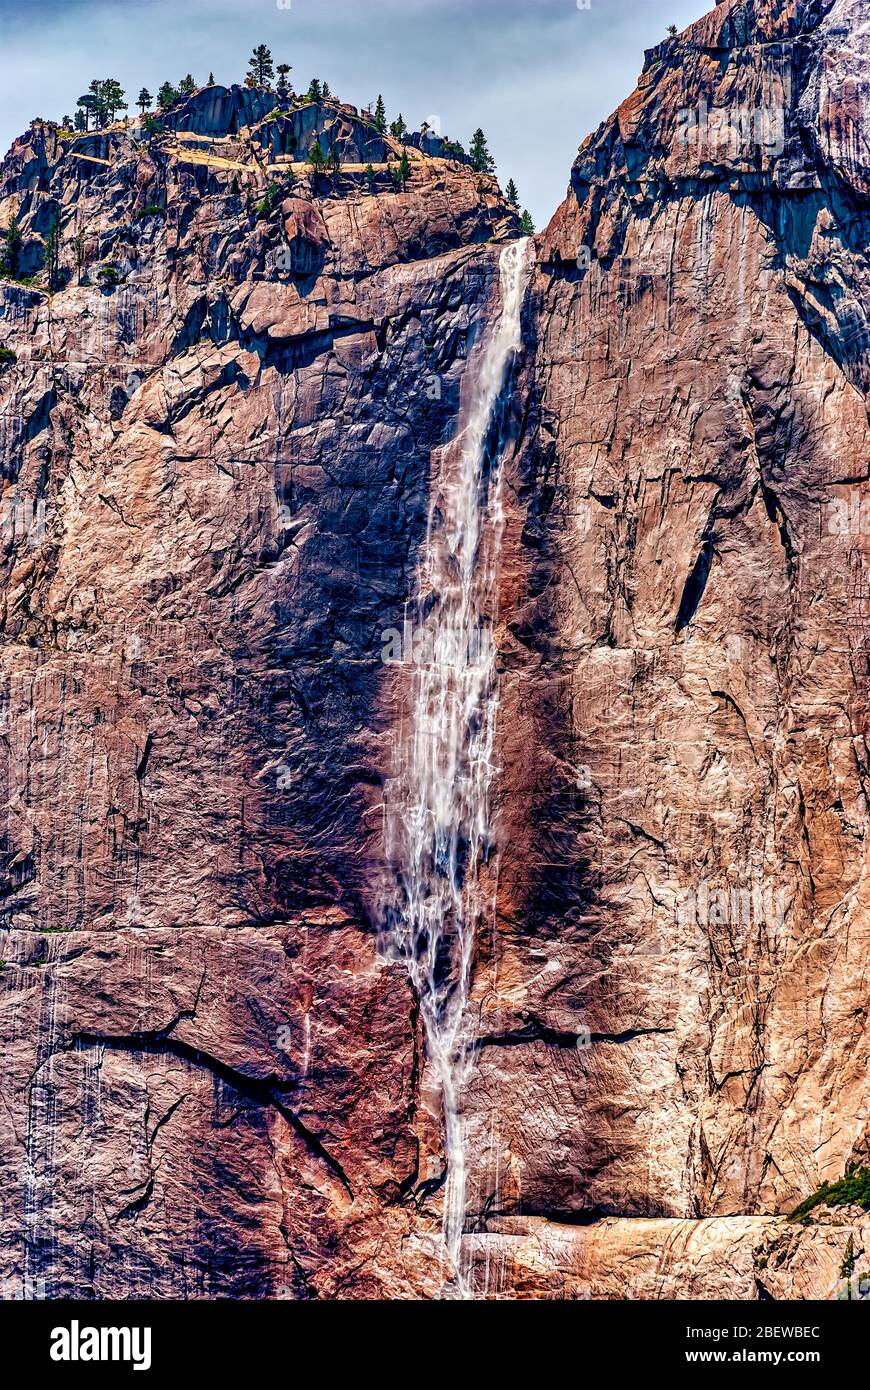 Les chutes de Yosemite, l'une des célèbres chutes du parc national de Yosemite en Californie. L'image a été prise en juillet. Banque D'Images